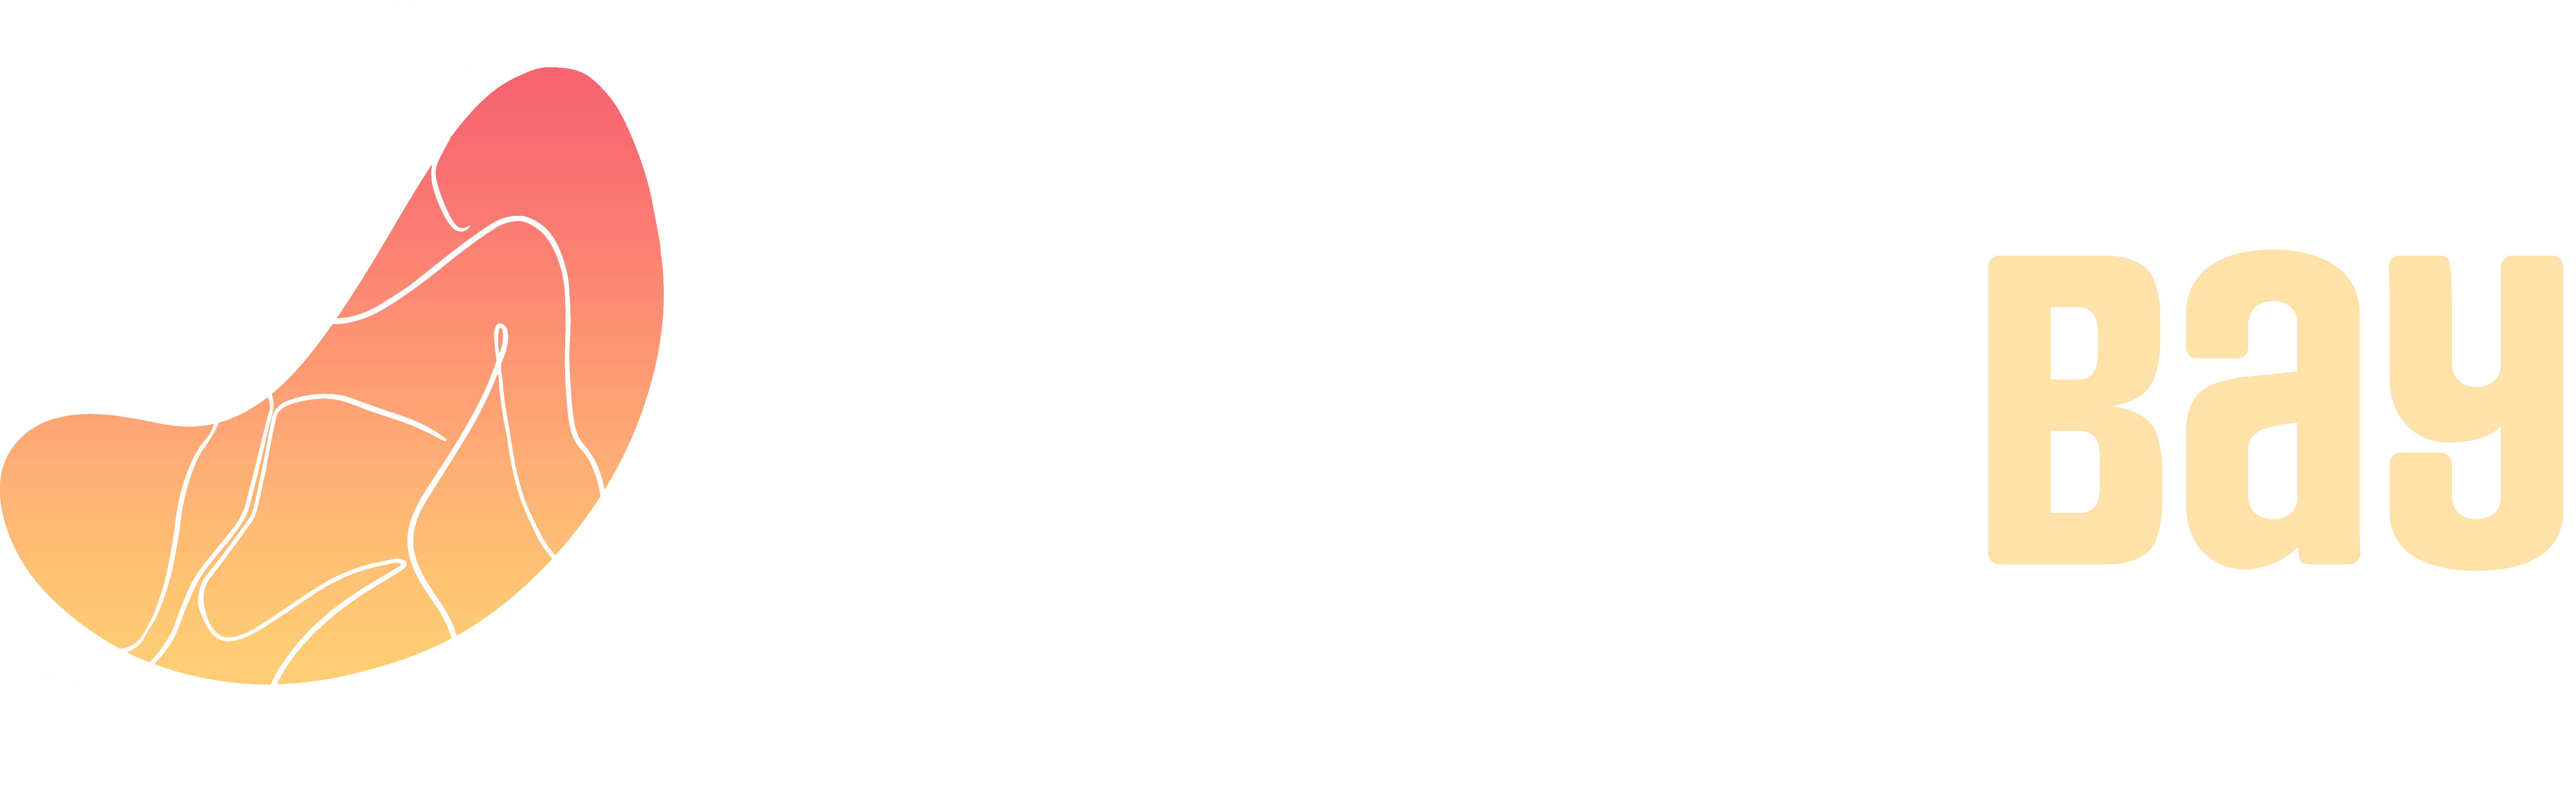 CrusiveBay